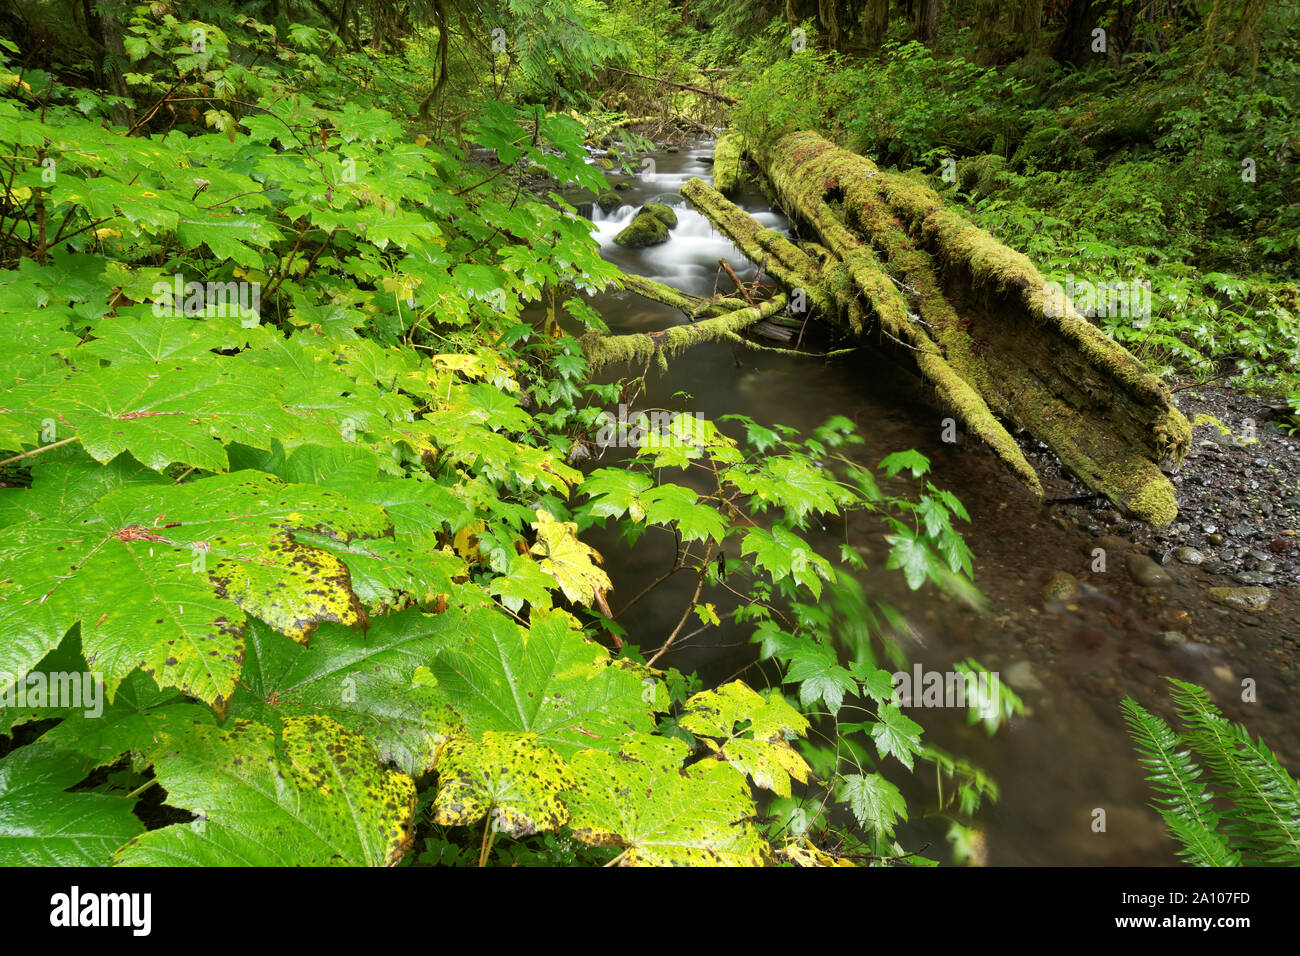 La branche sud de la petite rivière coule à travers la forêt tropicale, les arbres de cèdre en décomposition, Olympic National Park, Clallam County, Washington, USA Banque D'Images